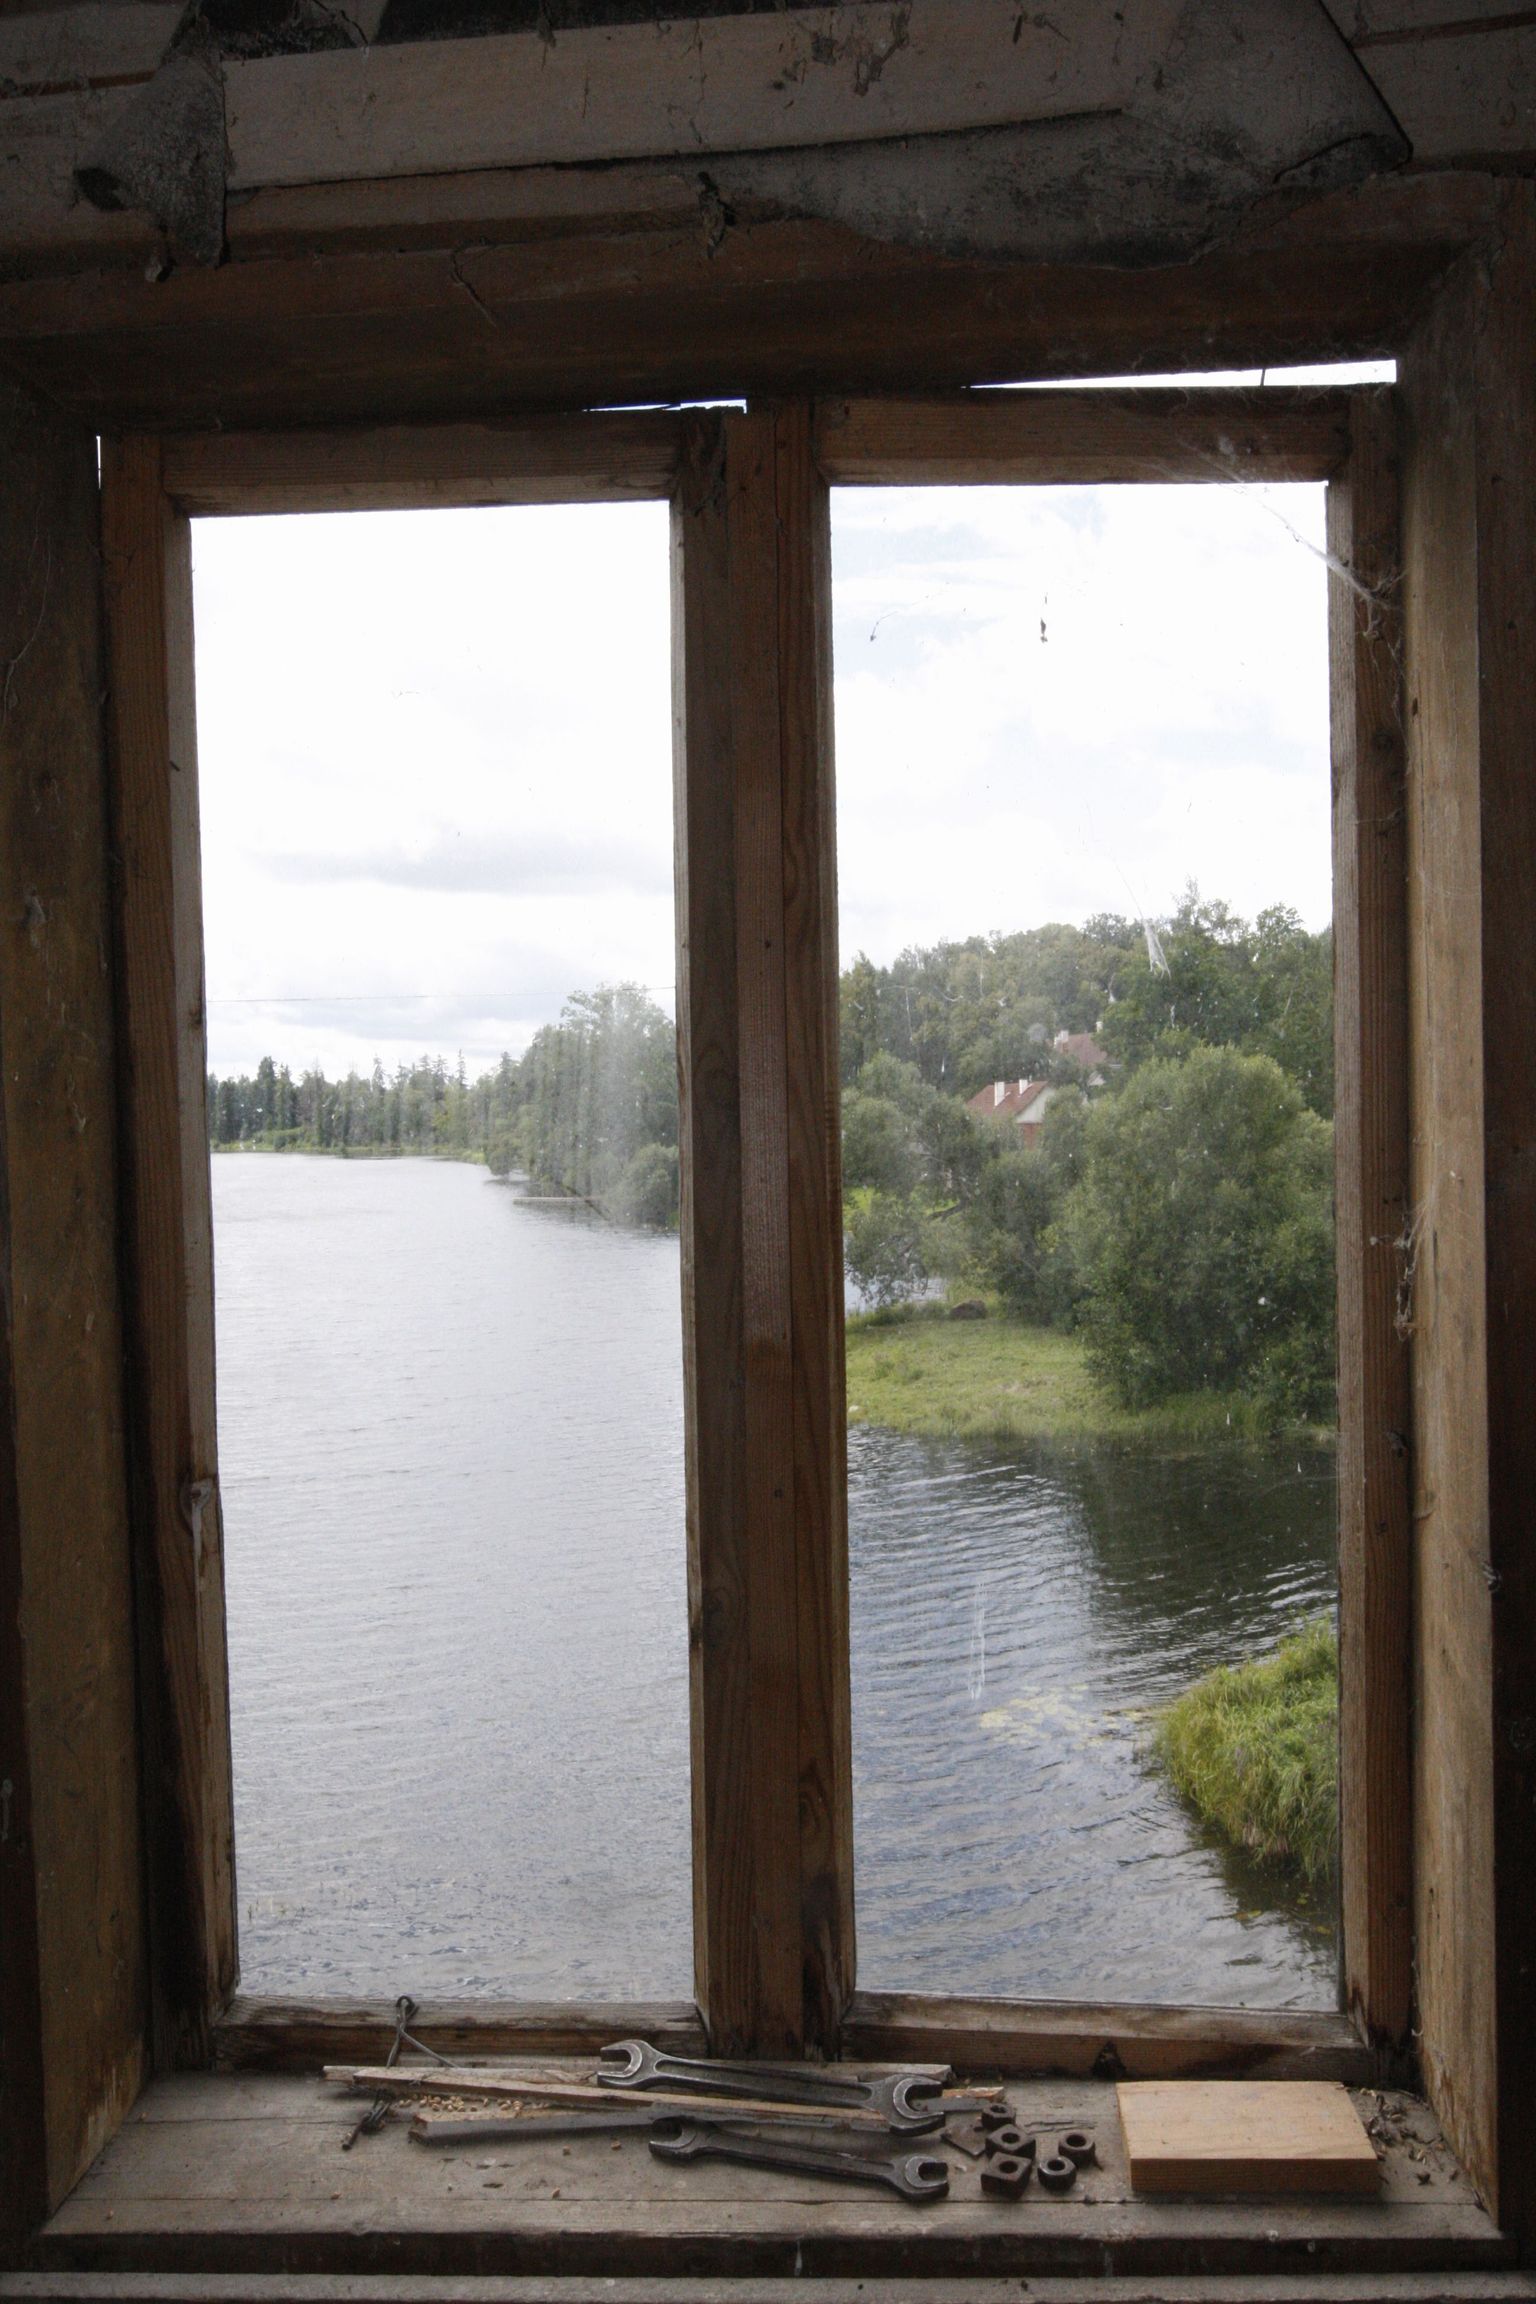 Eesti viimane vee jõul töötav Hellenurme vesiveski ammutab oma veskikivide käitamiseks jõudu selle aknast paistvast paisjärvest.